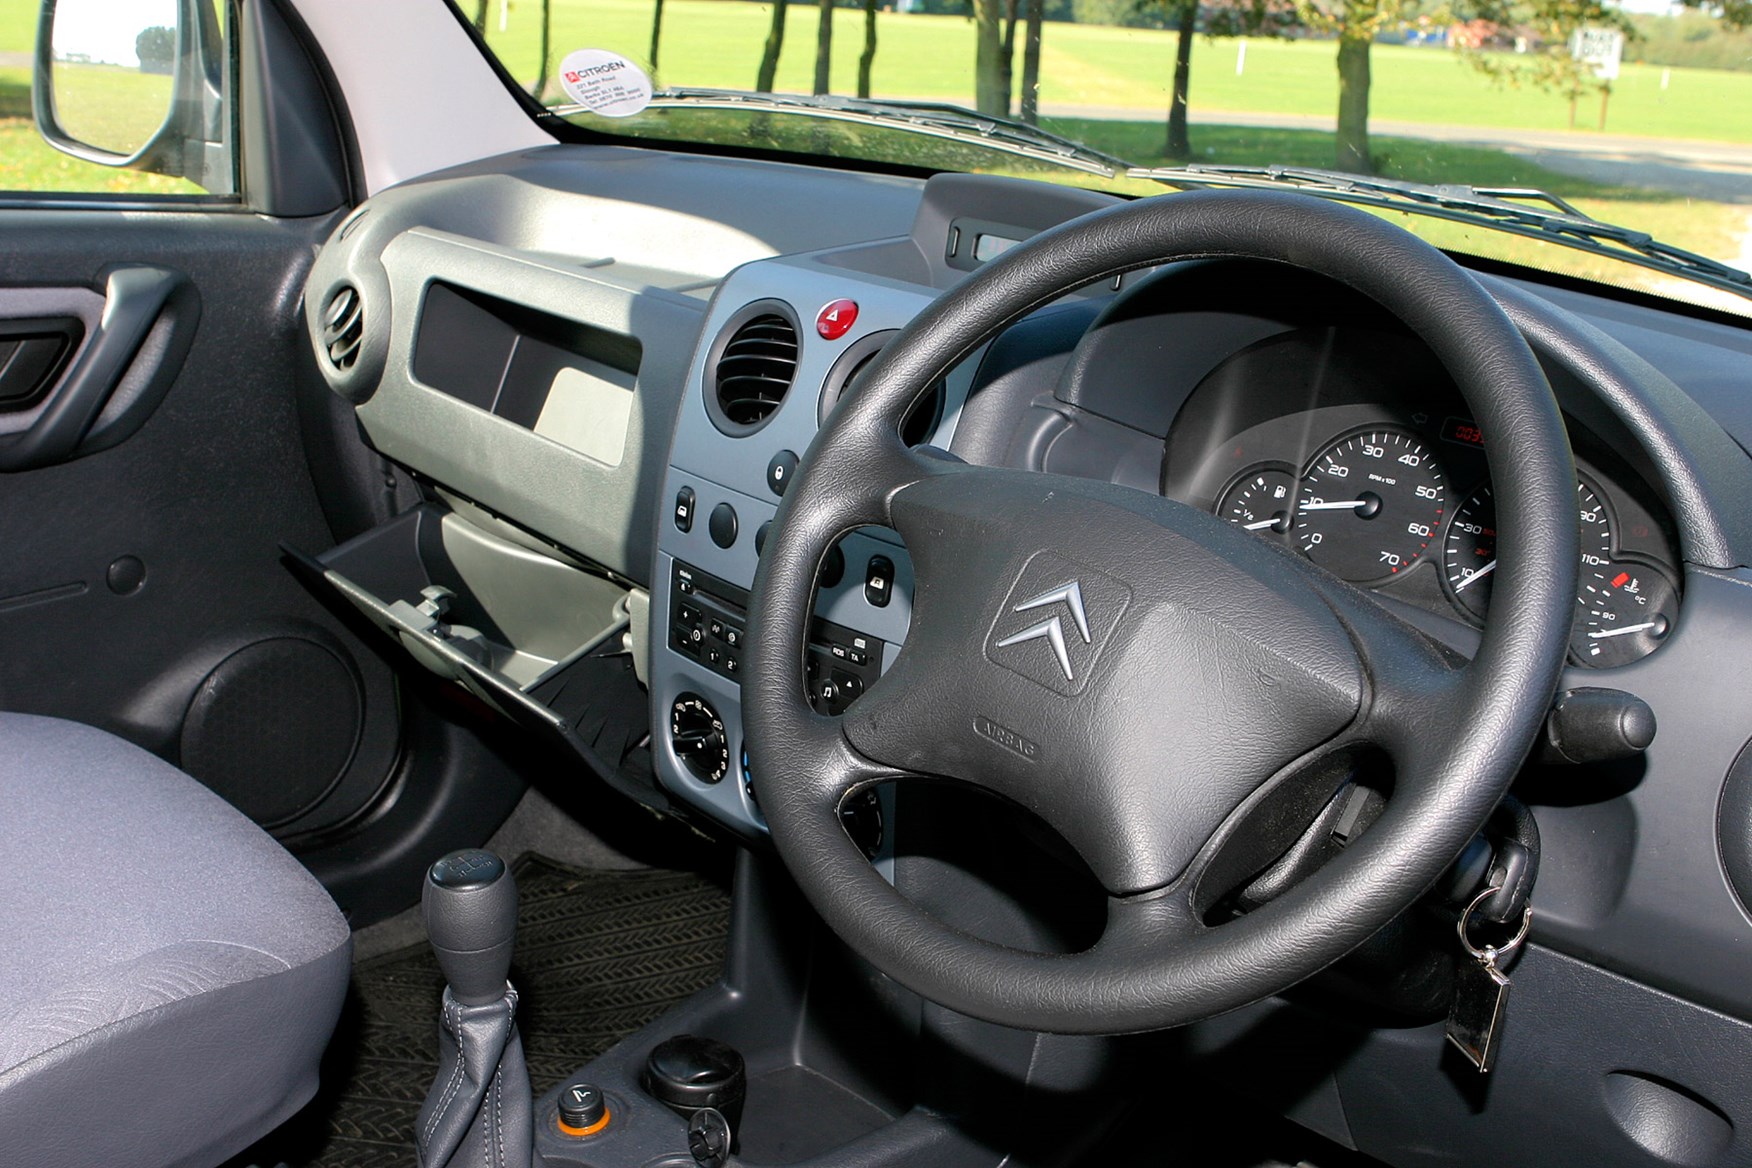 2002-2008 Citroen Berlingo review on Parkers Vans - interior